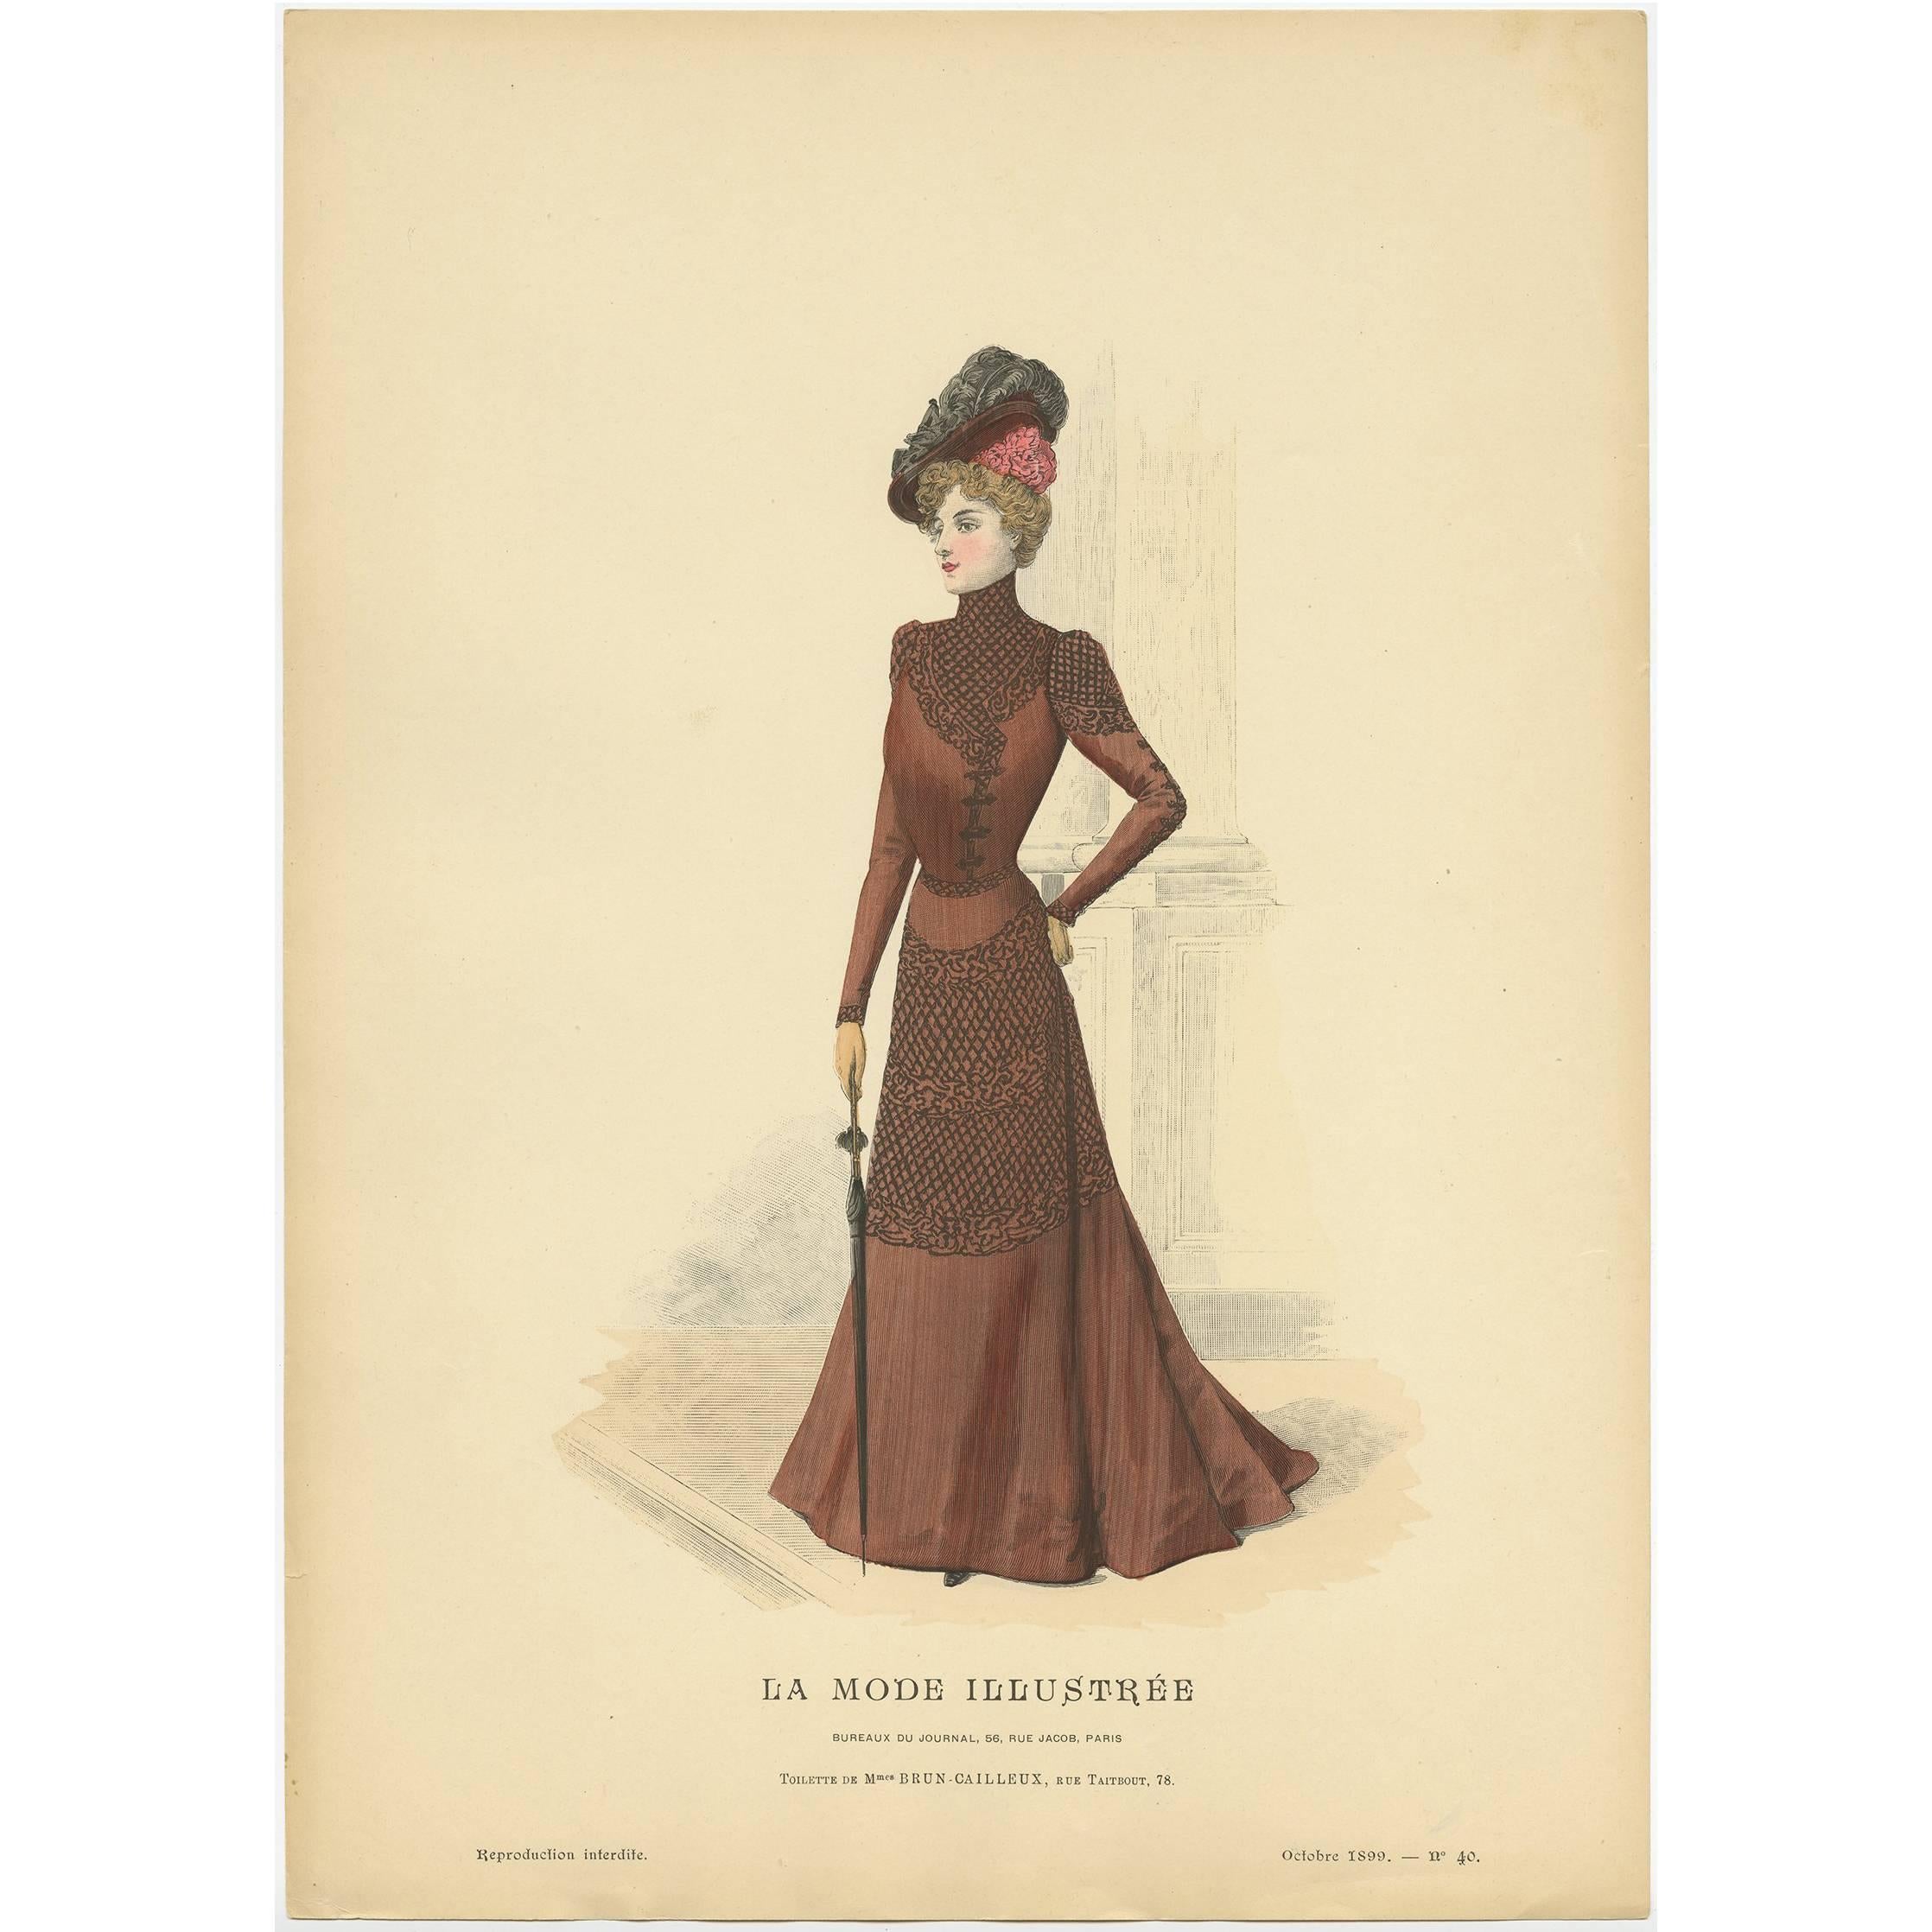 Antique Fashion Print Published by La Mode Illustrée 'No. 40 - 1899'